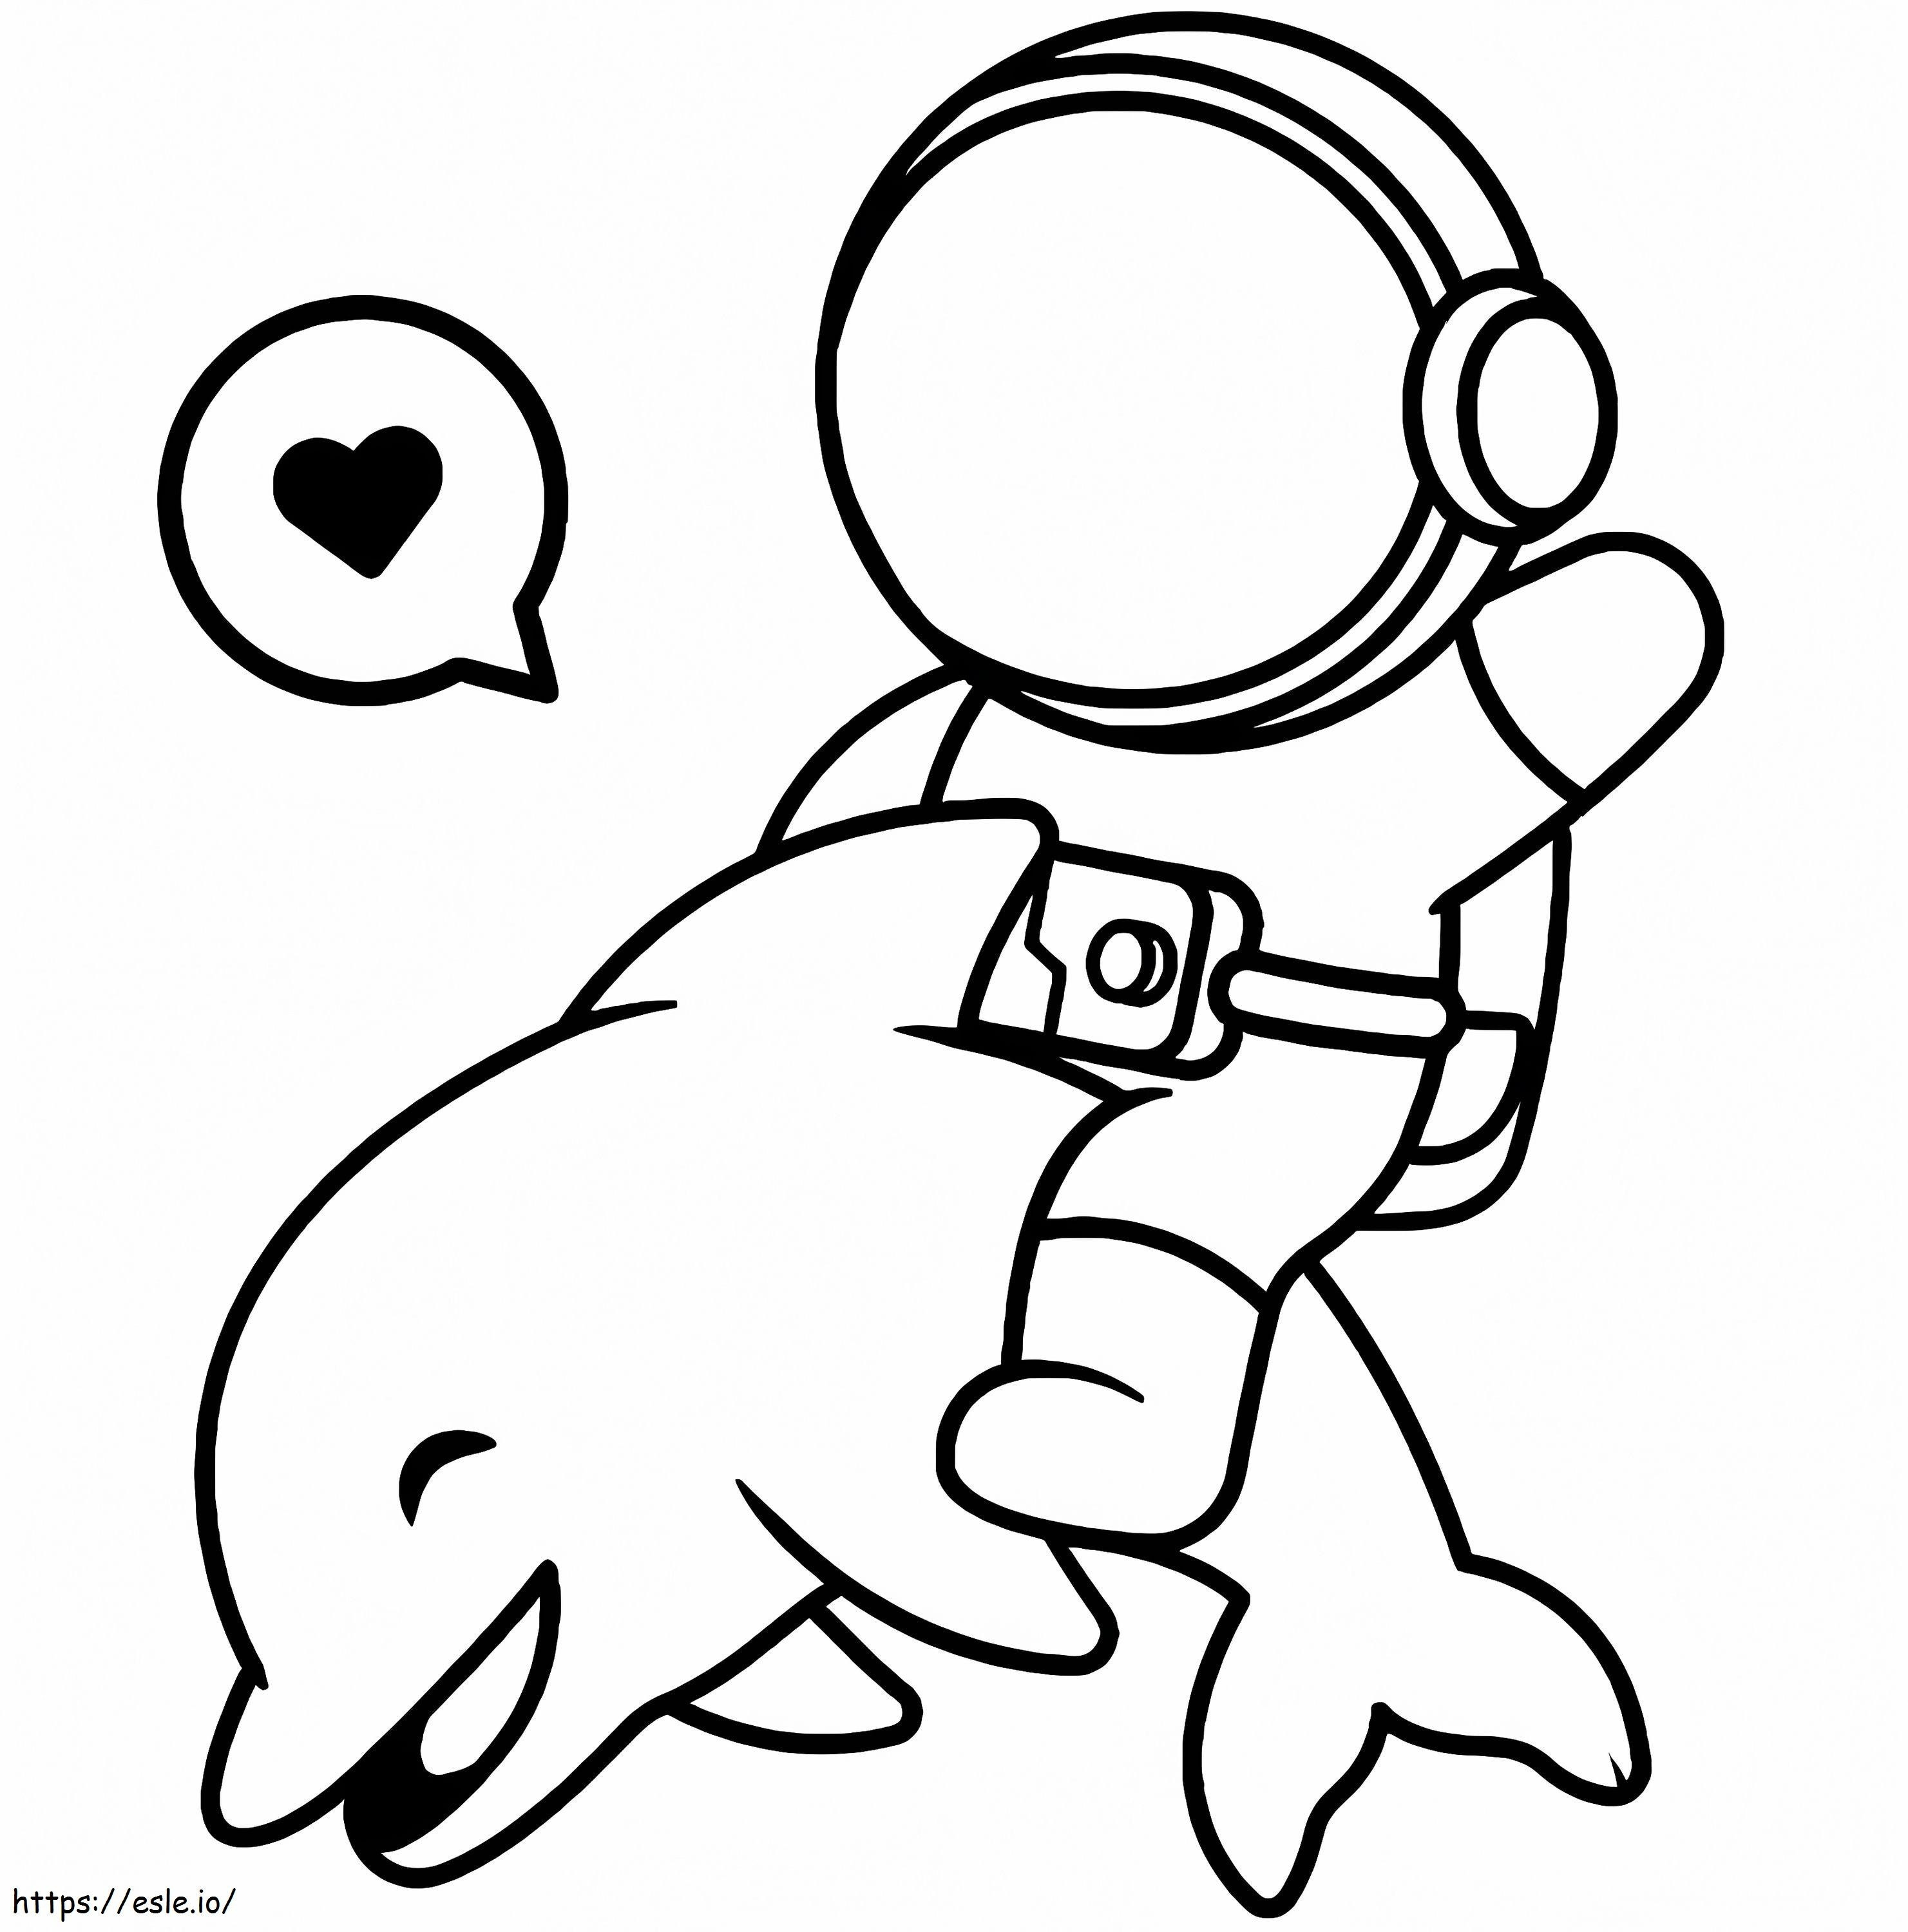 Golfinho com astronauta para colorir